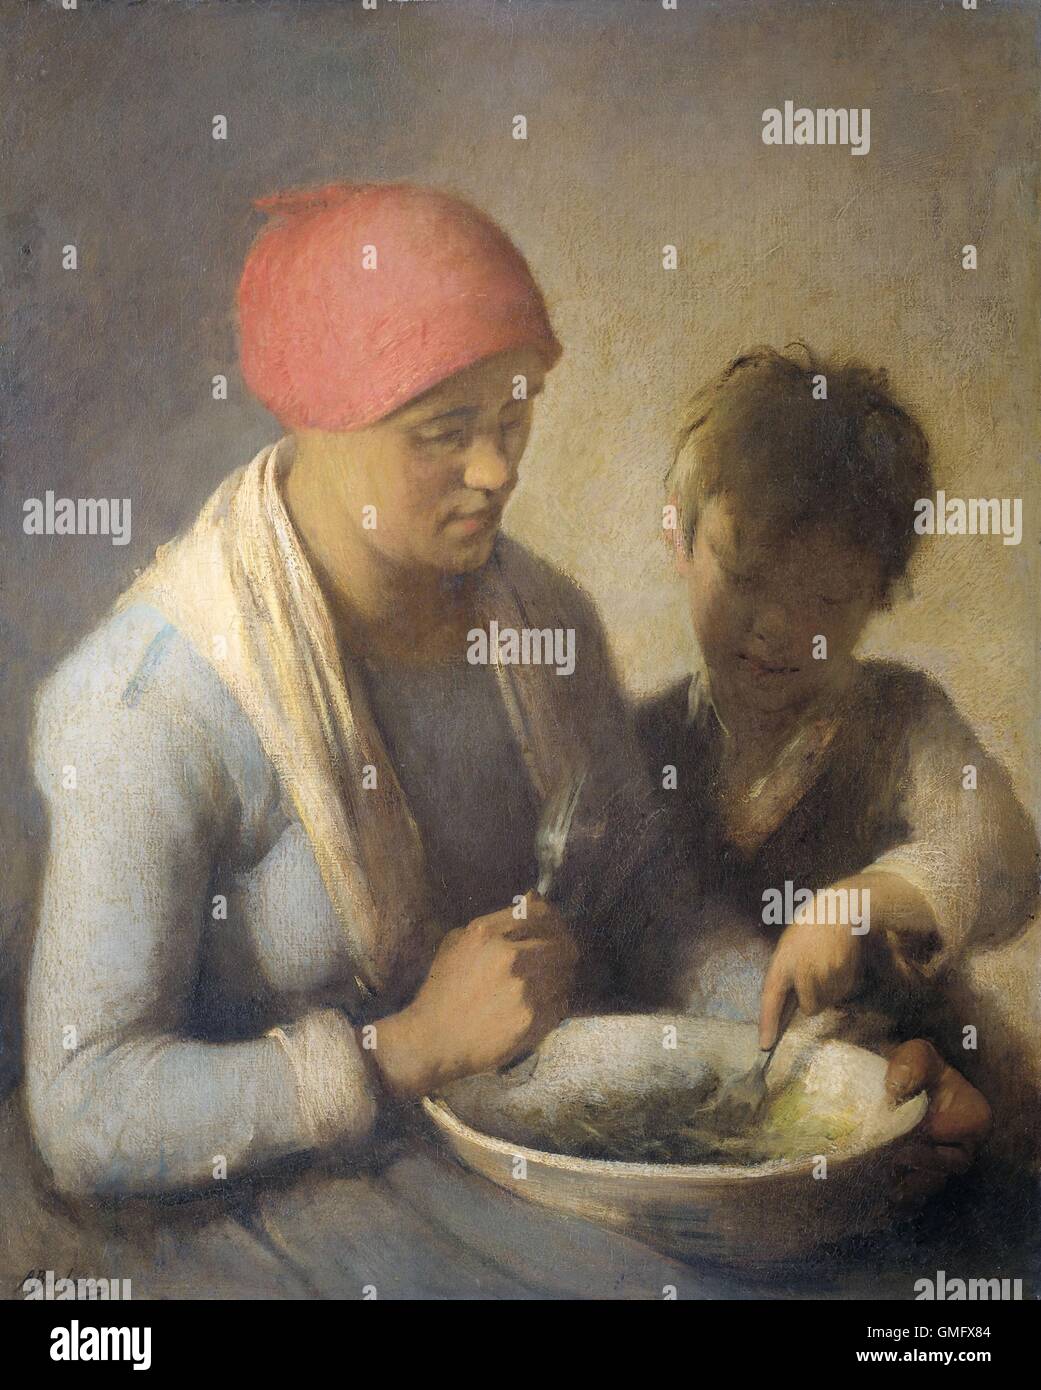 Das Essen von Auguste Boulard, c. 1850-92, niederländische Malerei, Öl auf Leinwand. Eine Bäuerin und ihr Kind essen gemeinsam aus einer großen Schüssel (BSLOC 2016 2 169) Stockfoto